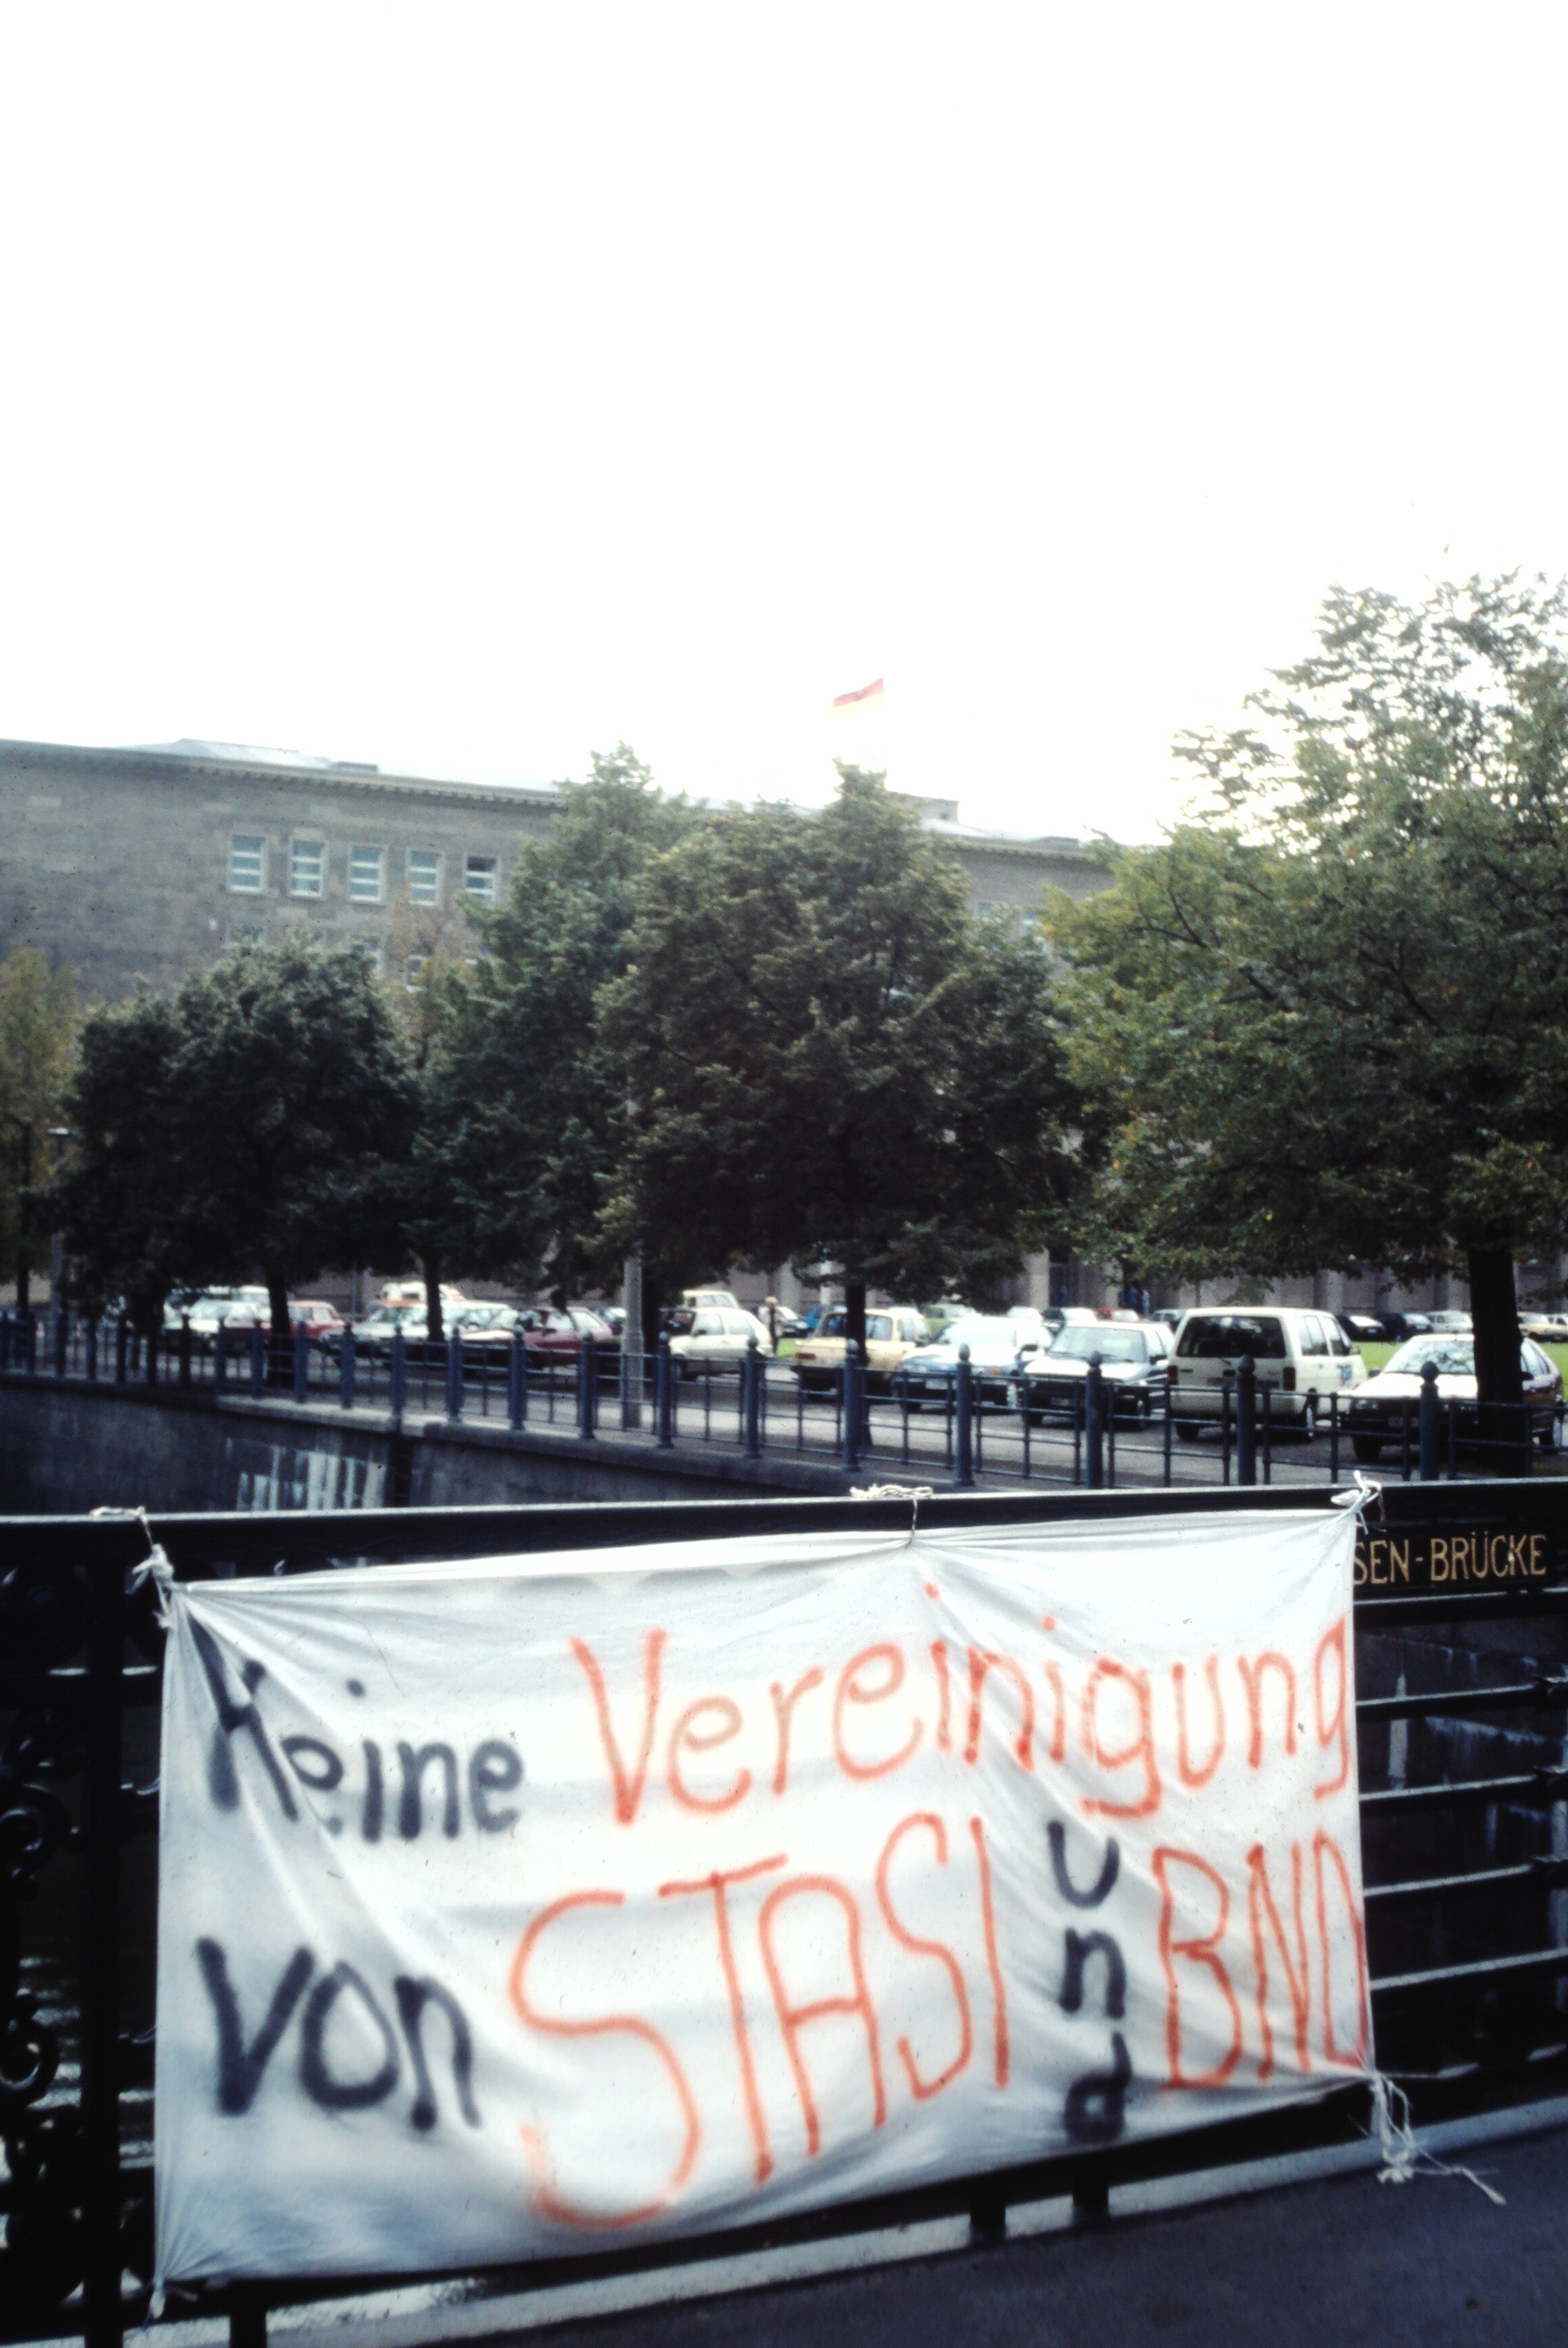 Zentrale der Staatsicherheit in Berlin: Transparent mit der Aufschrift "Keine Vereinigung von Stasi und BND" (DDR Geschichtsmuseum im Dokumentationszentrum Perleberg CC BY-SA)